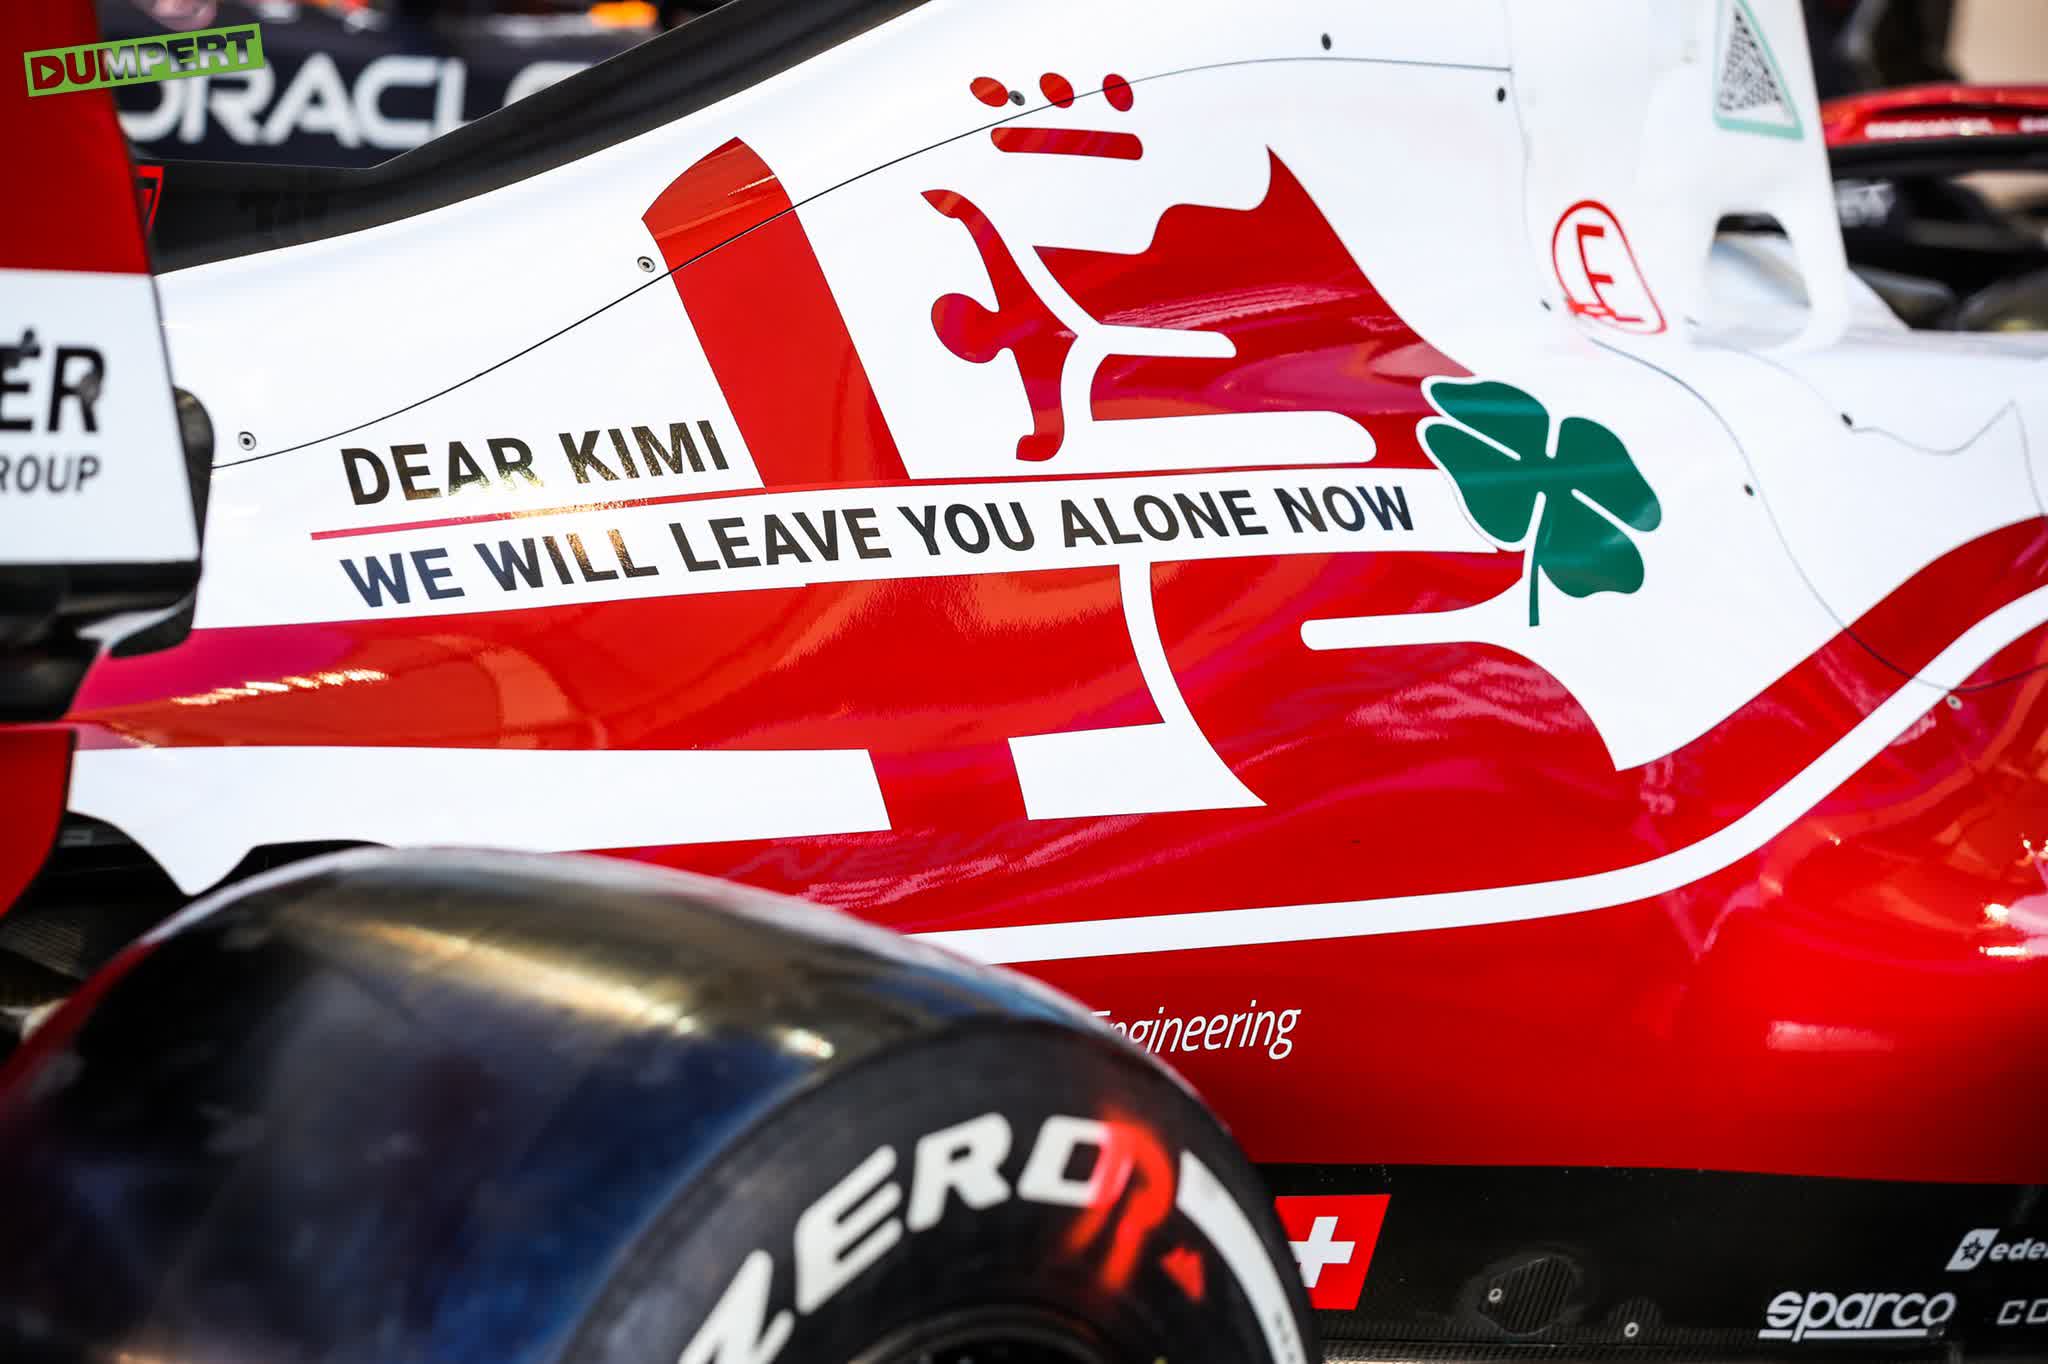 Afscheidsdecal voor laatste race Kimi